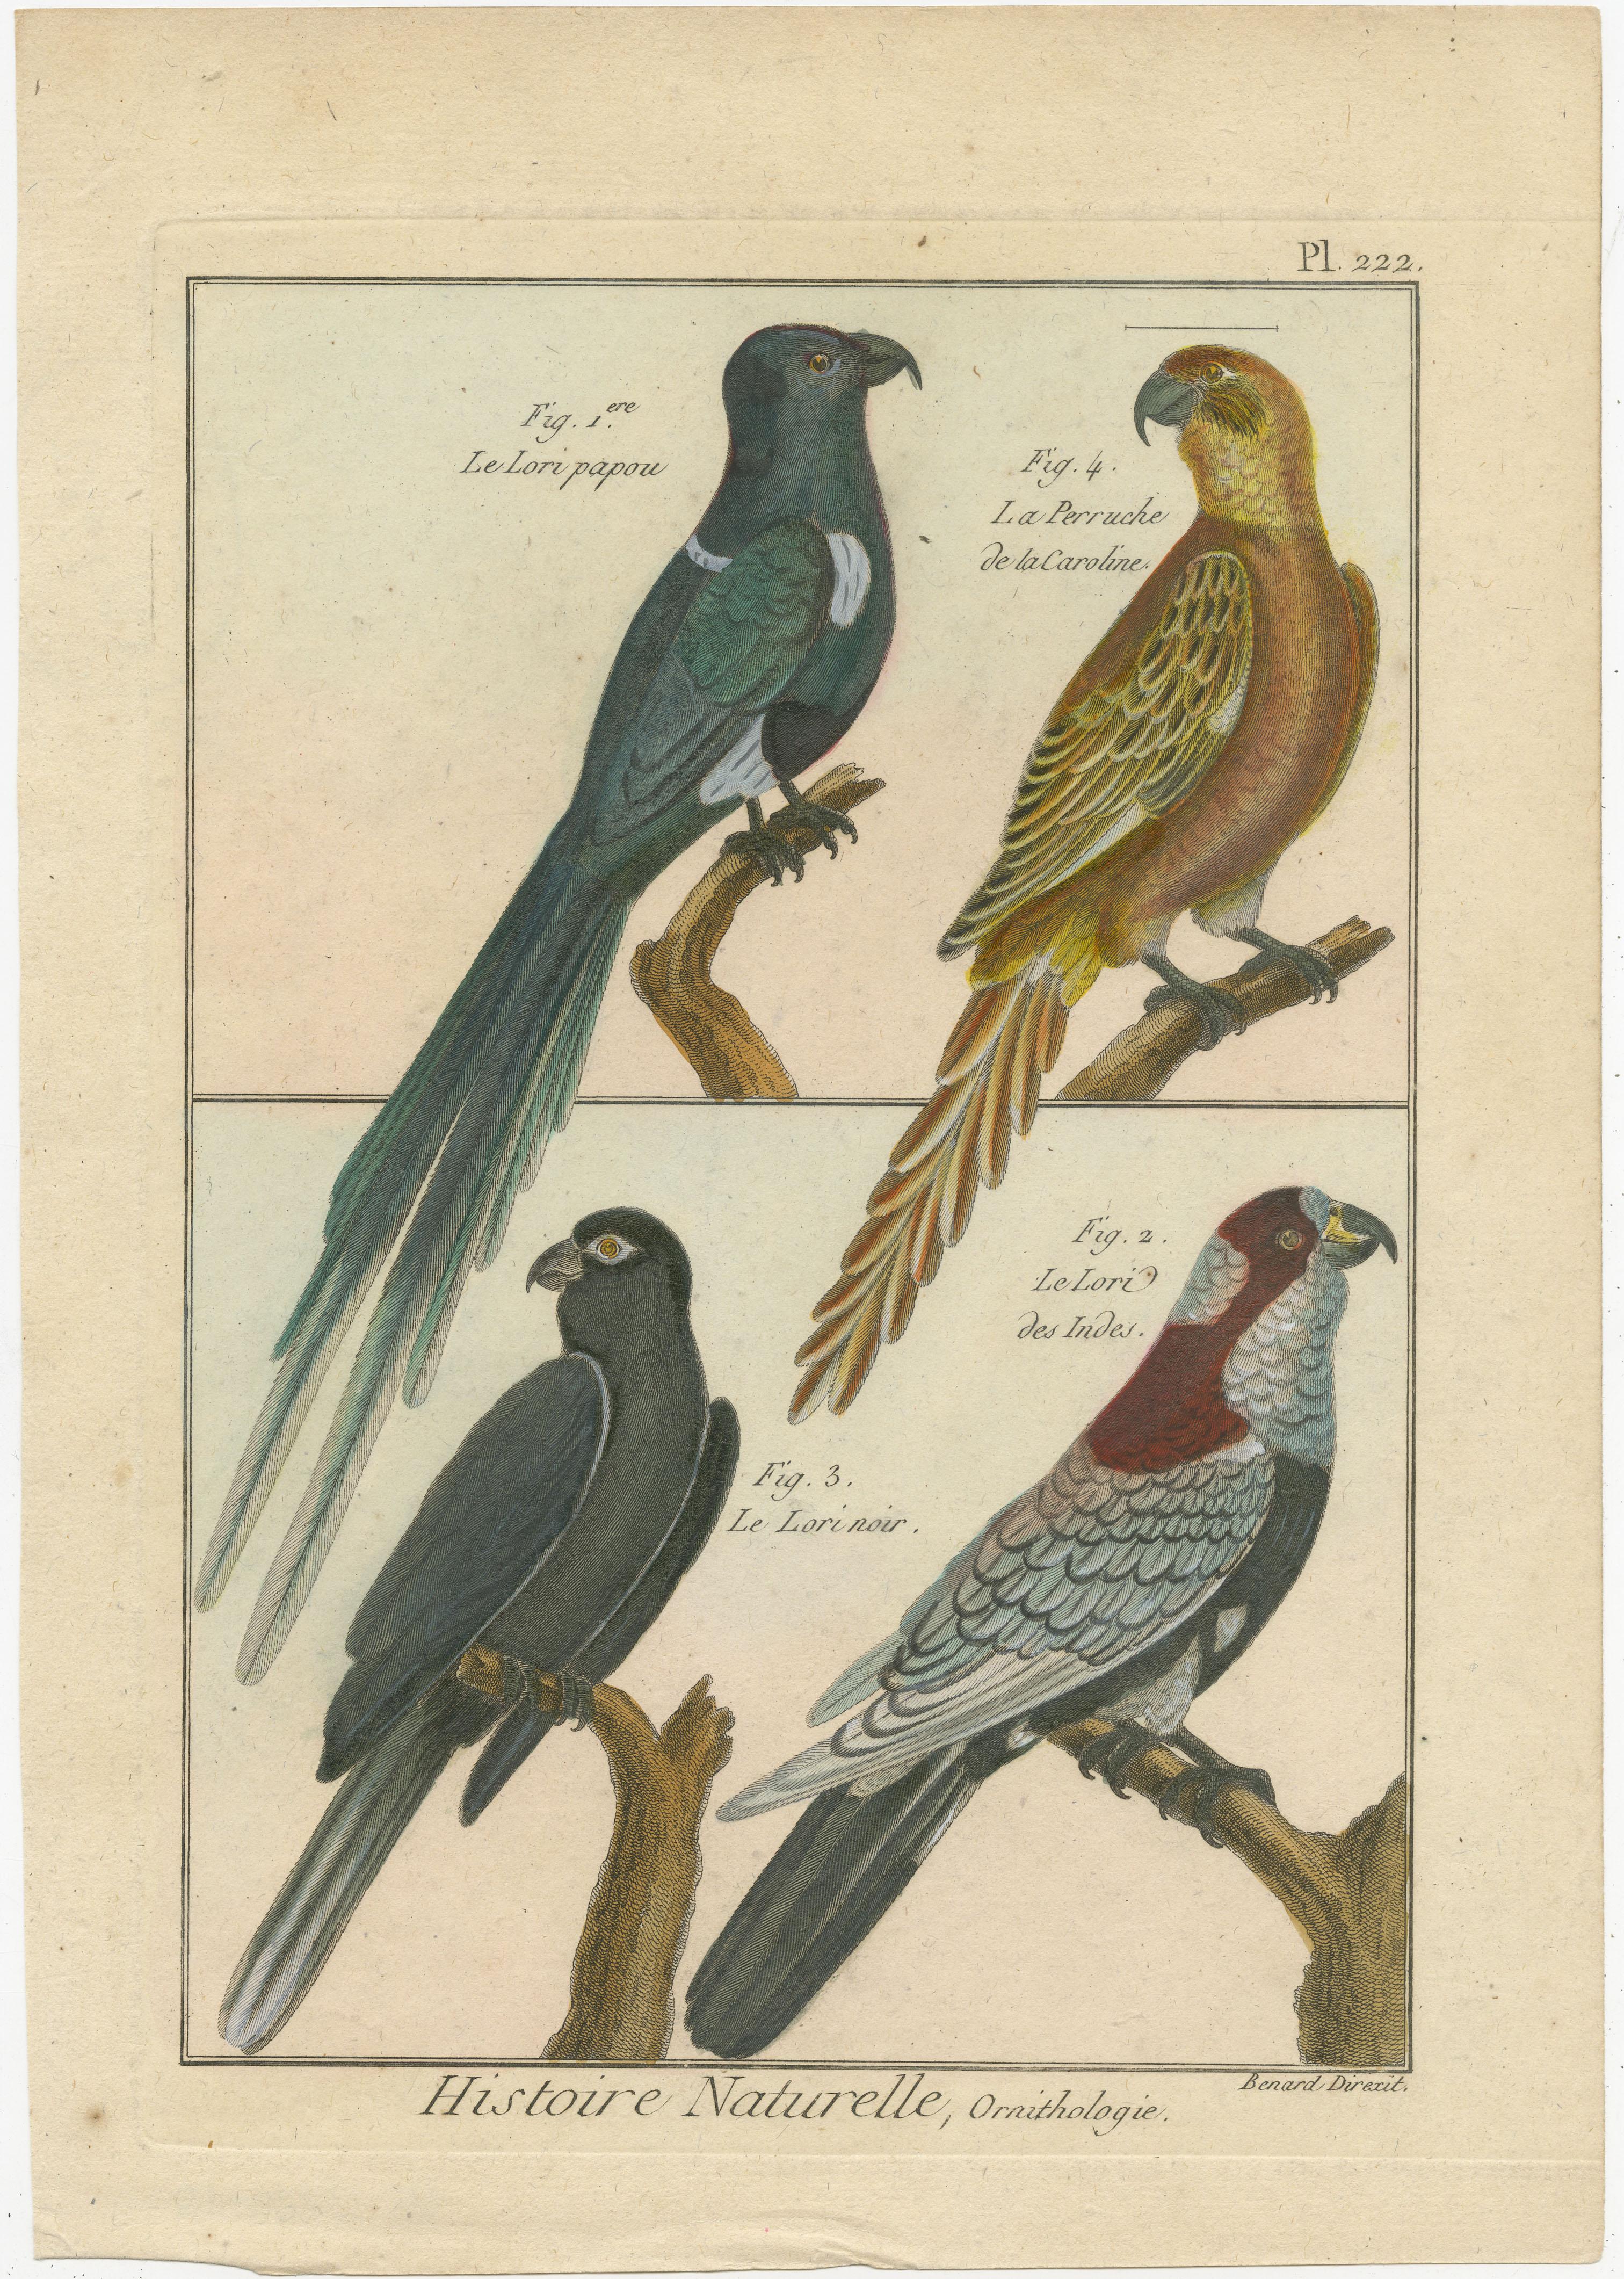 Eine authentische, perfekte und helle, ursprünglich handkolorierte Illustration von vier Papageien, auf Pergamentpapier (Kupferstich). Es hat einen feinen Glanz durch das authentisch aufgetragene Eigelb als Firnis. Der Künstler ist Robert Bernard